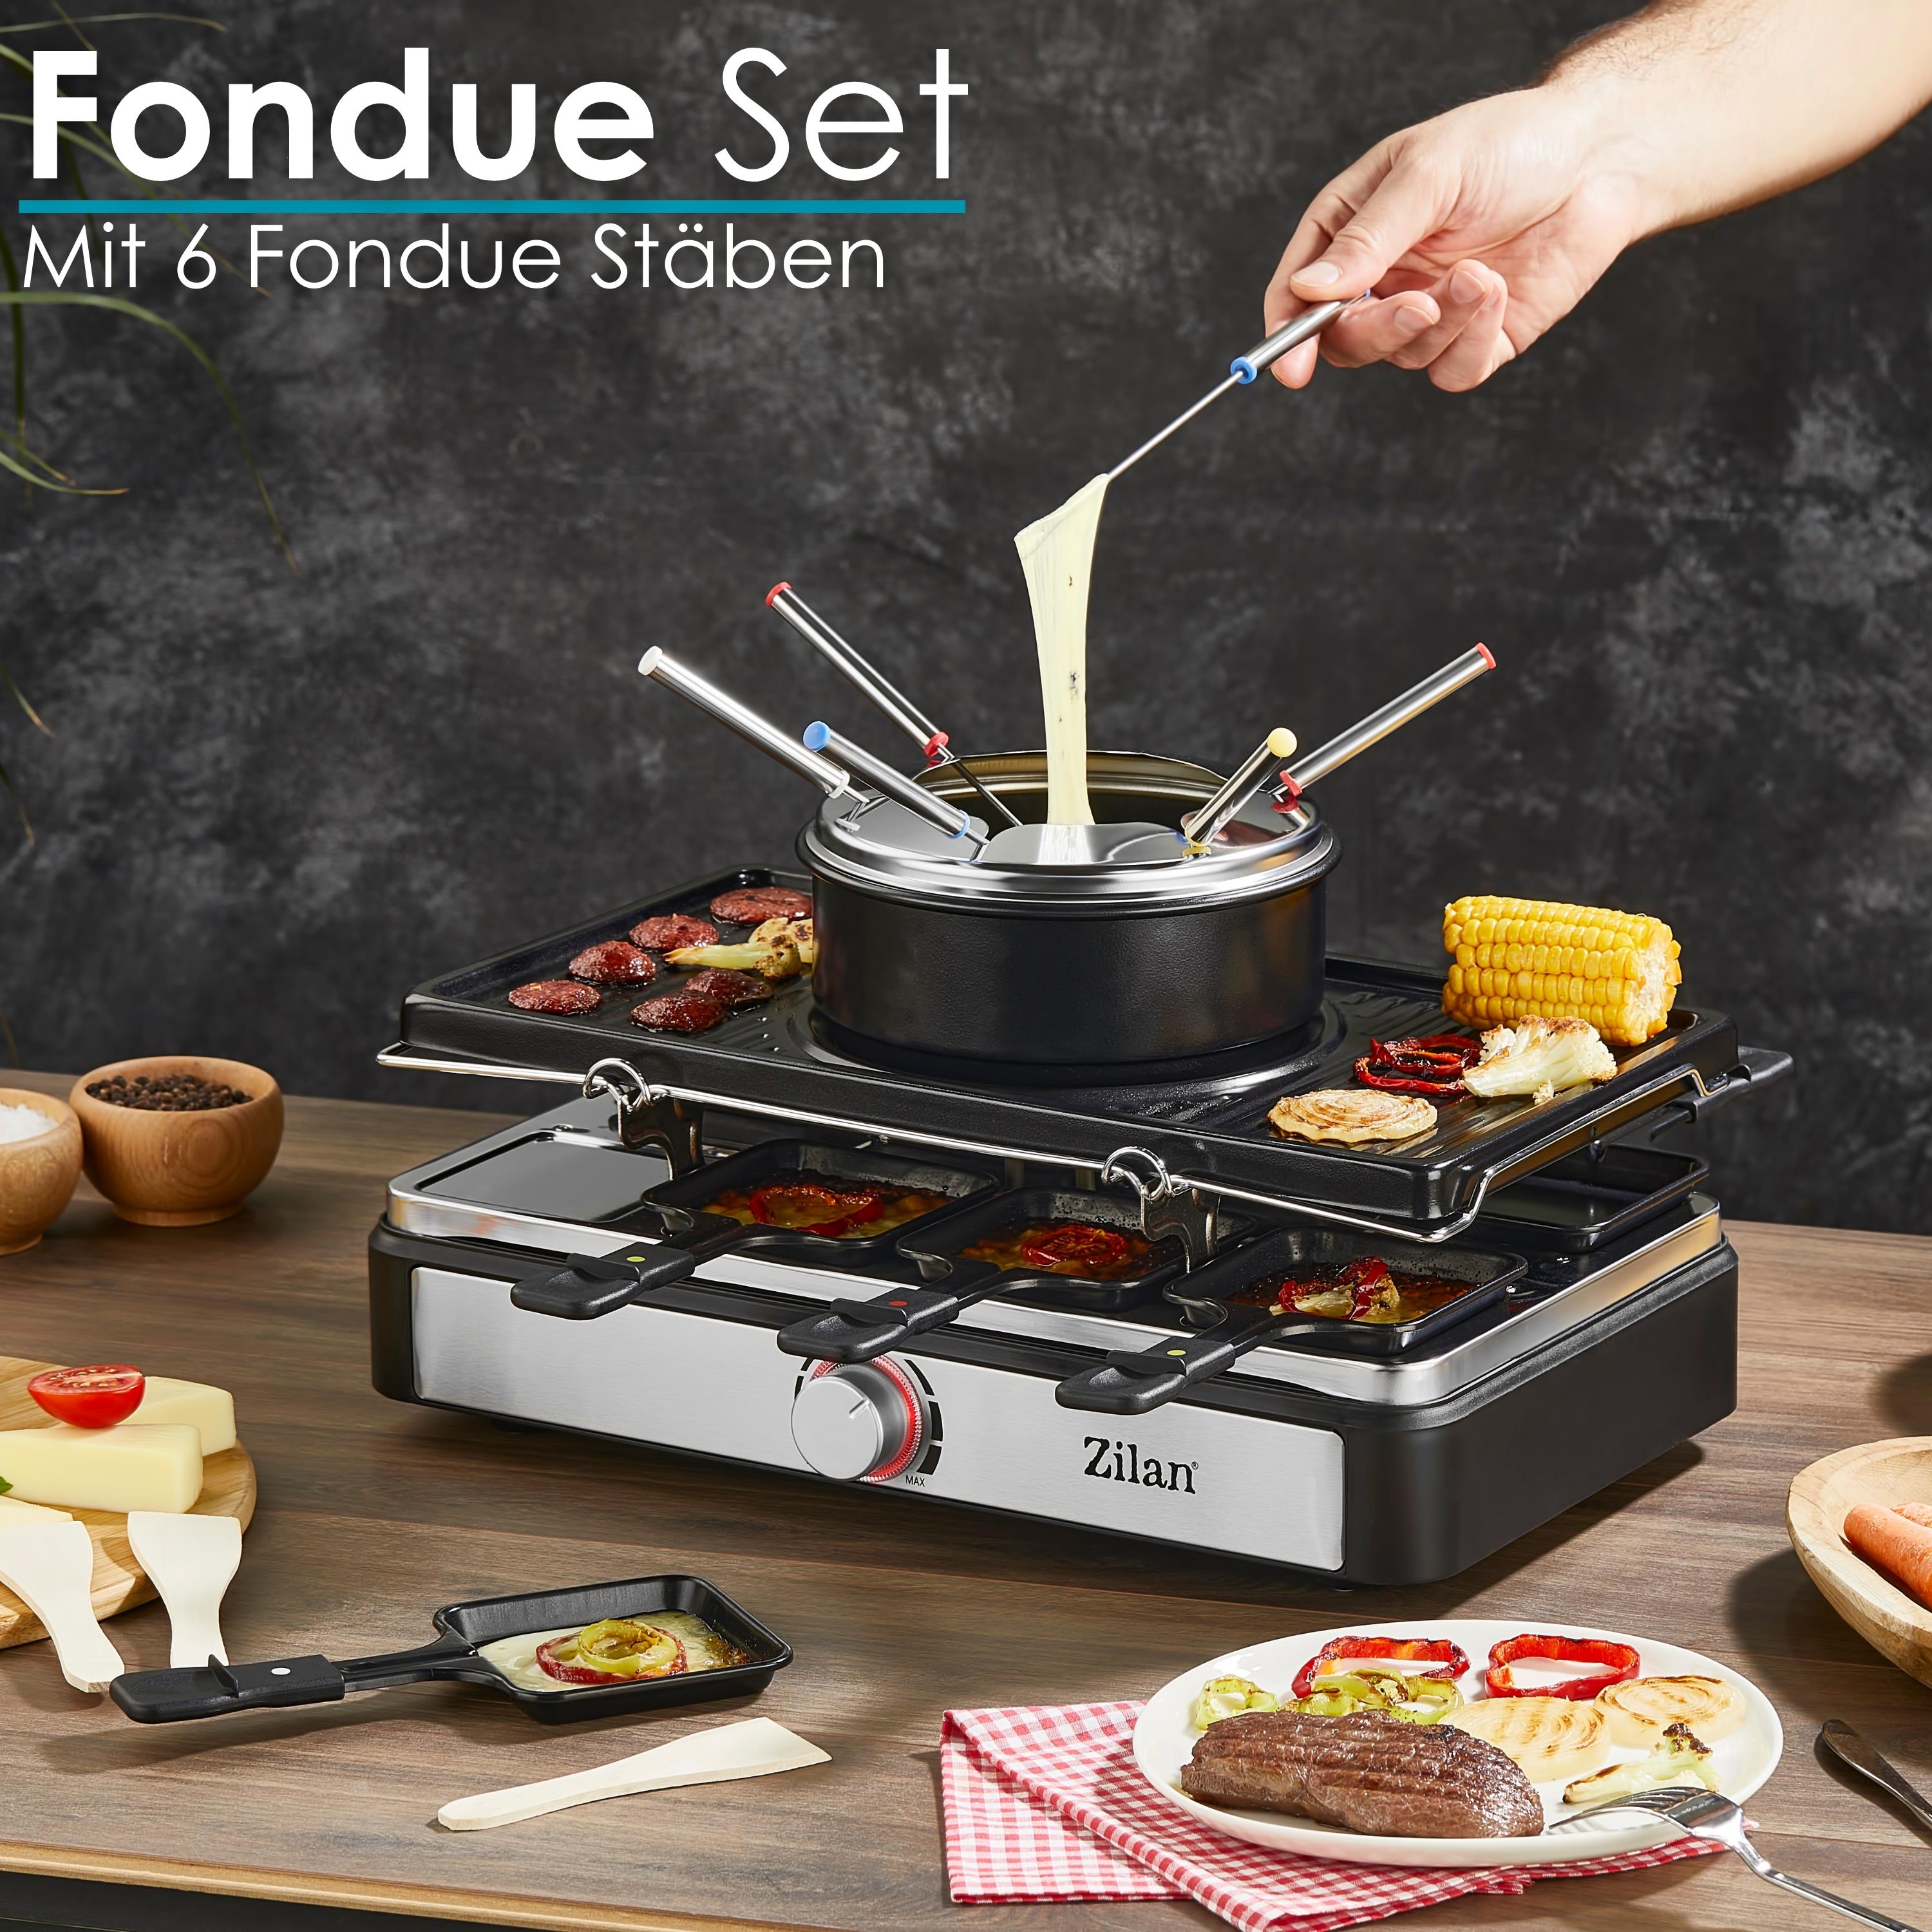 Zilan Raclette Grill mit Fondue Set | Raclette Party Grill für 8 Personen